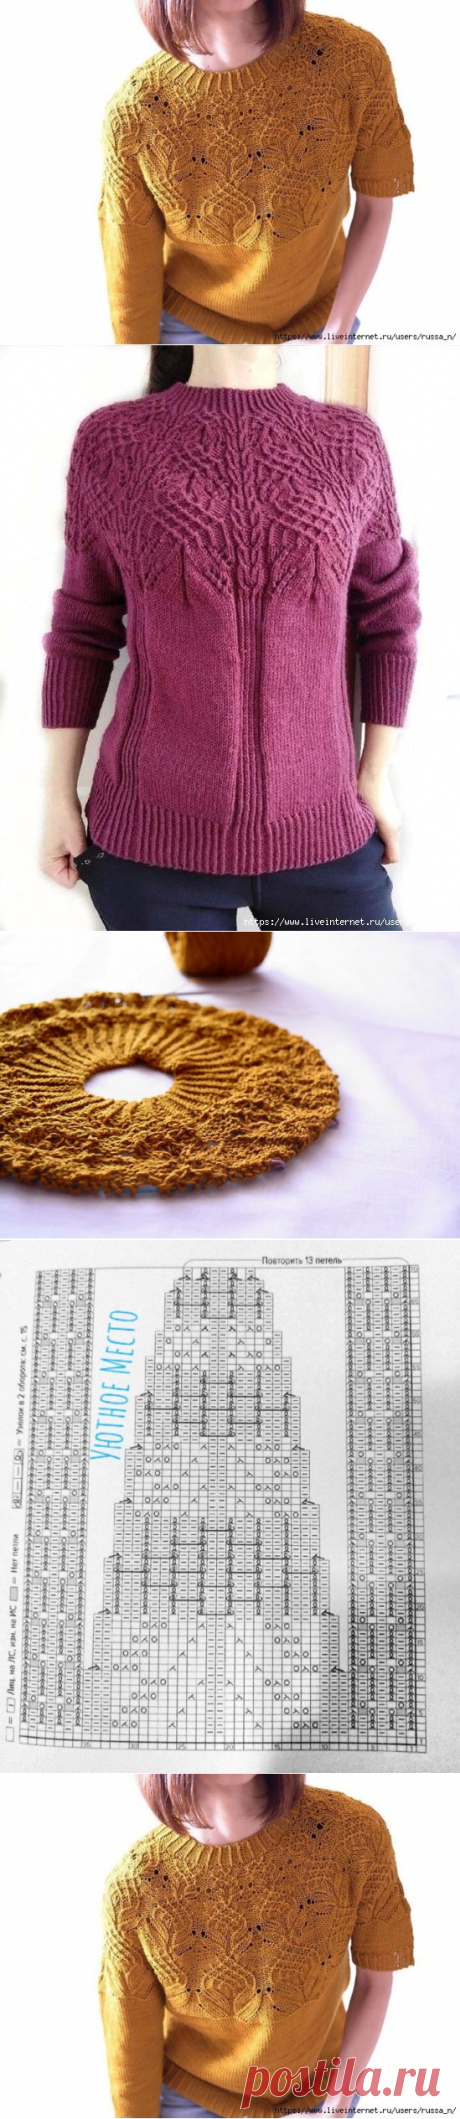 Схема кокетки оригинального пуловера Юриноки (Вязание спицами) – Журнал Вдохновение Рукодельницы